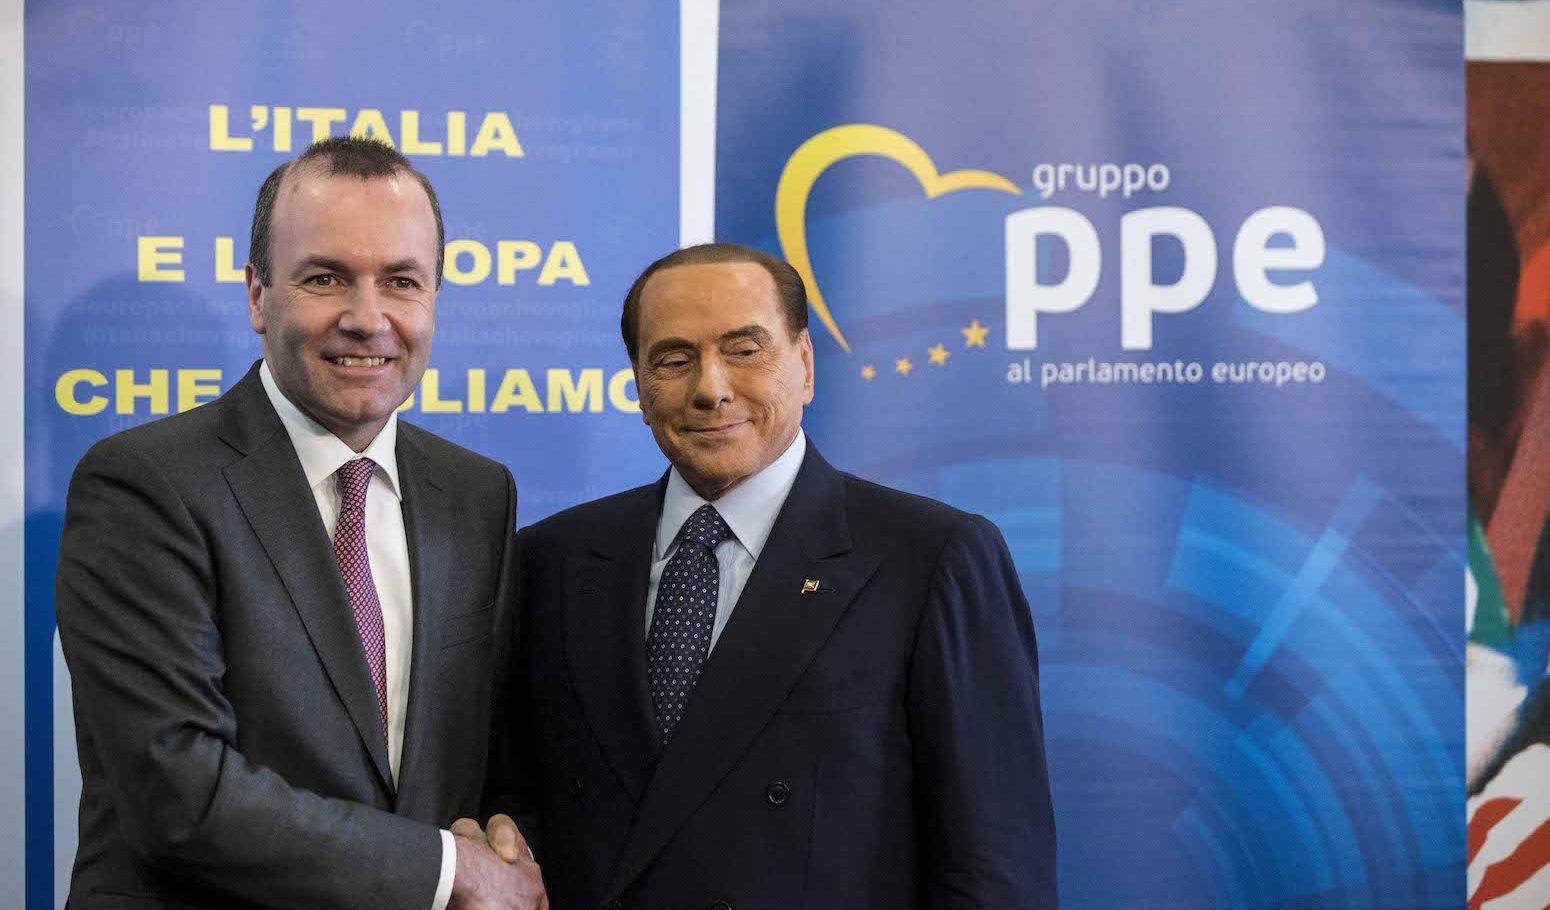 Berlusconi al Quirinale, nel 'teatrino' propagandistico anche Manfred Weber del Ppe: "Sarebbe un ottimo presidente"